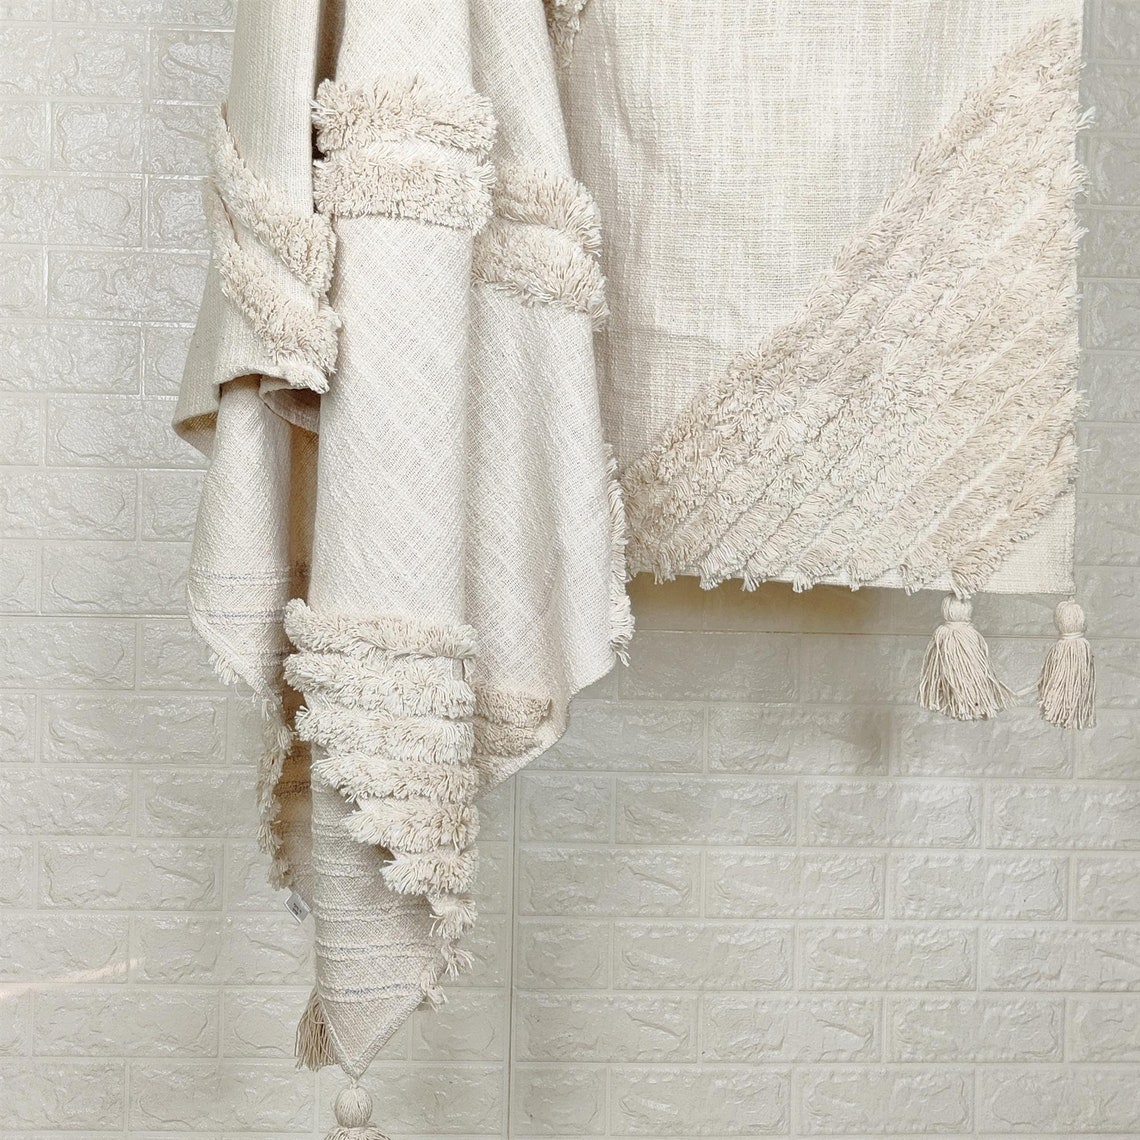 100% Cotton Throw Natural White Cotton Tufted Textured 52x72 - Etsy